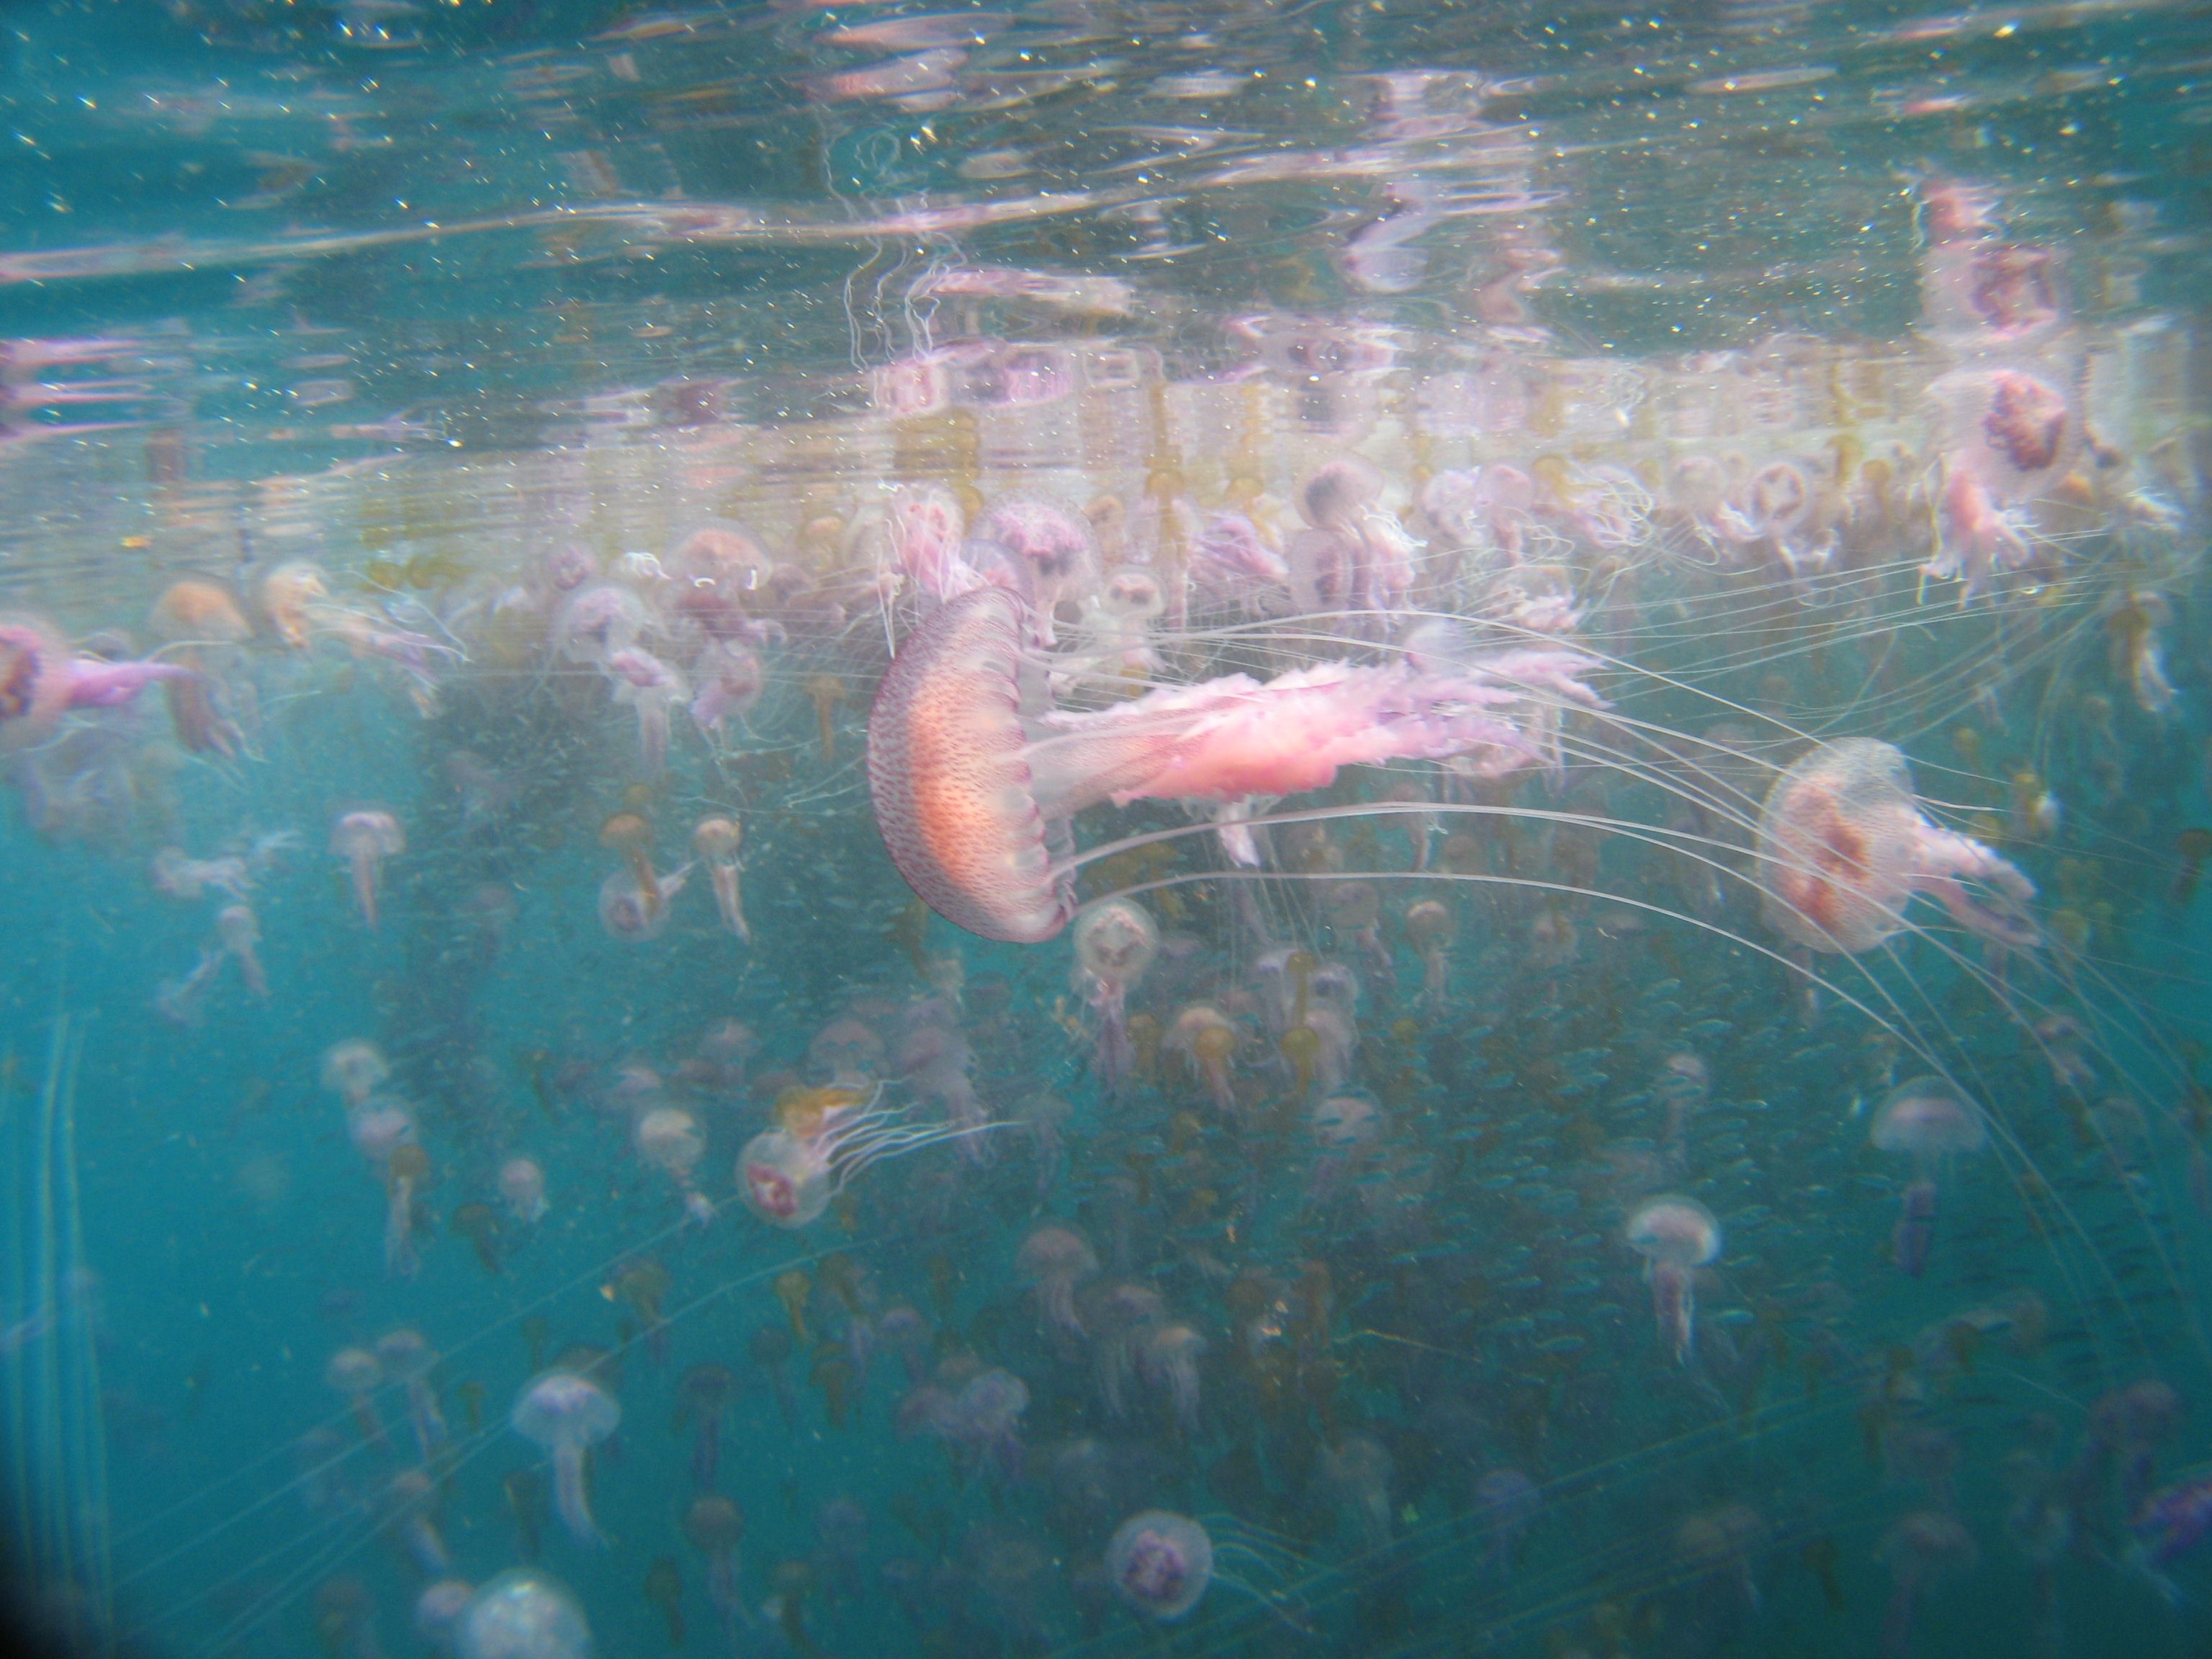 Des pélagies (Pelagia noctiluca) dans les eaux de Port-Cros. © Sandrine Ruitton